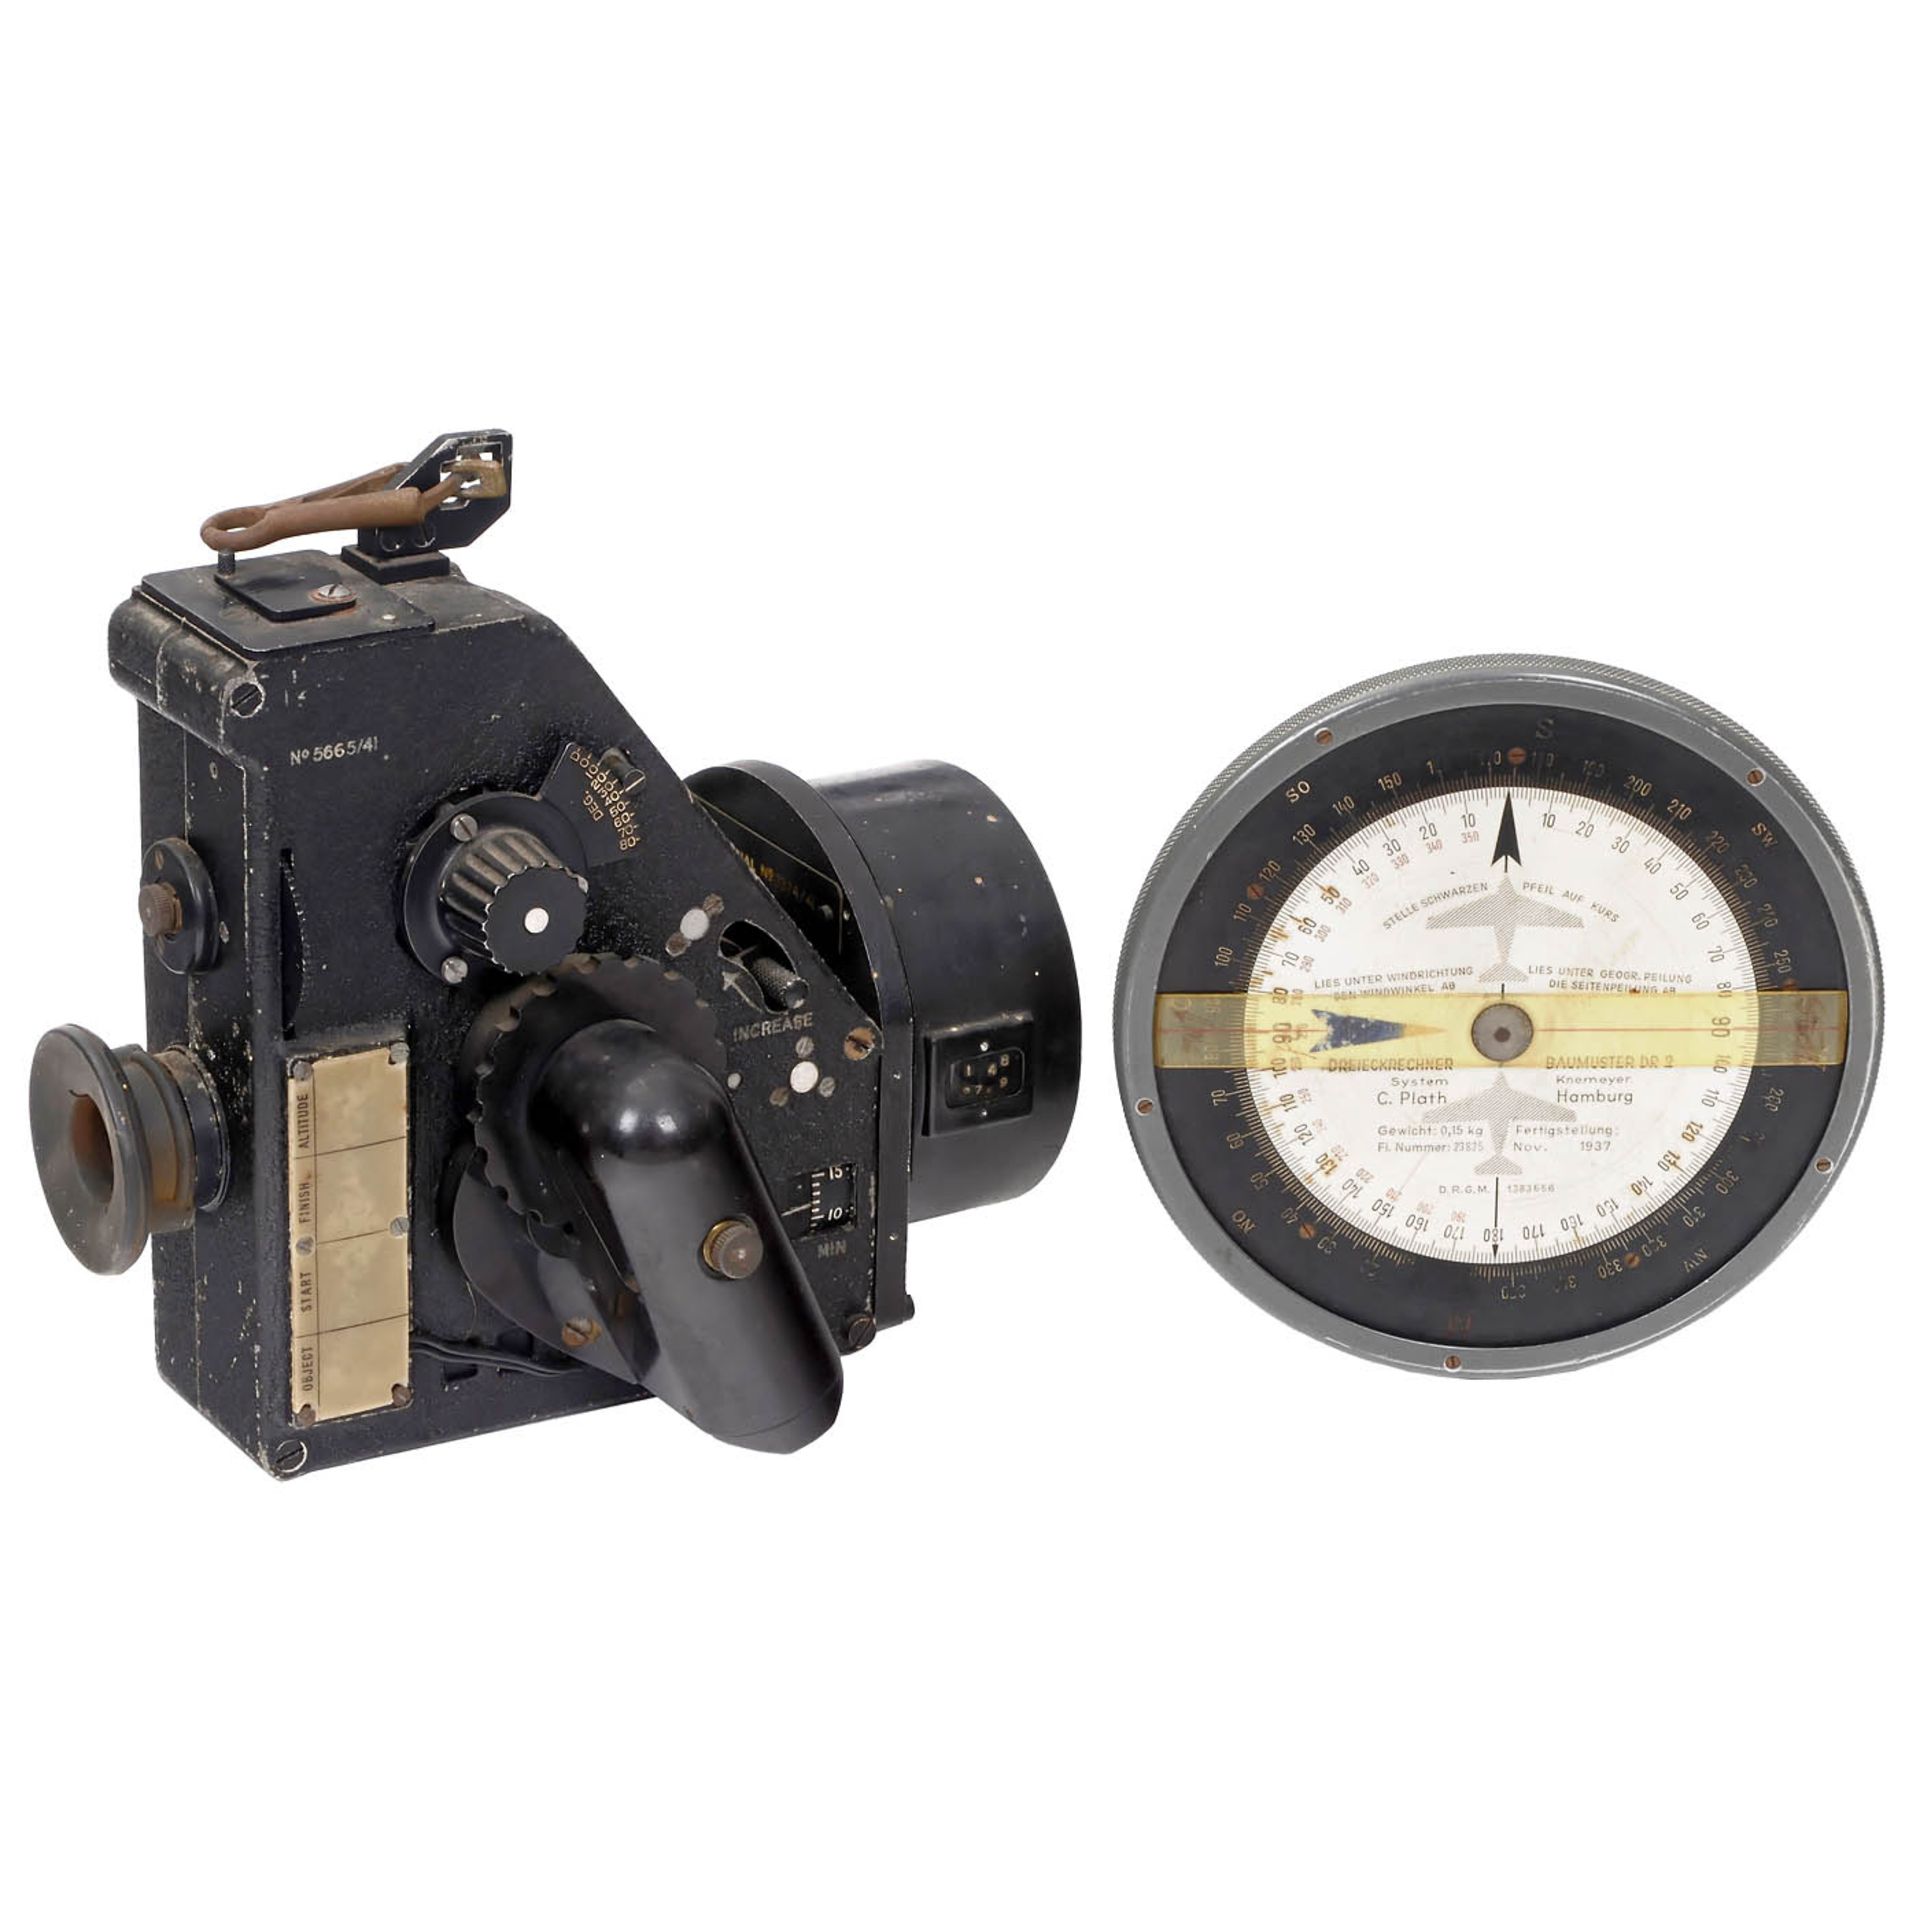 2 World War II Aircraft Navigation Instruments